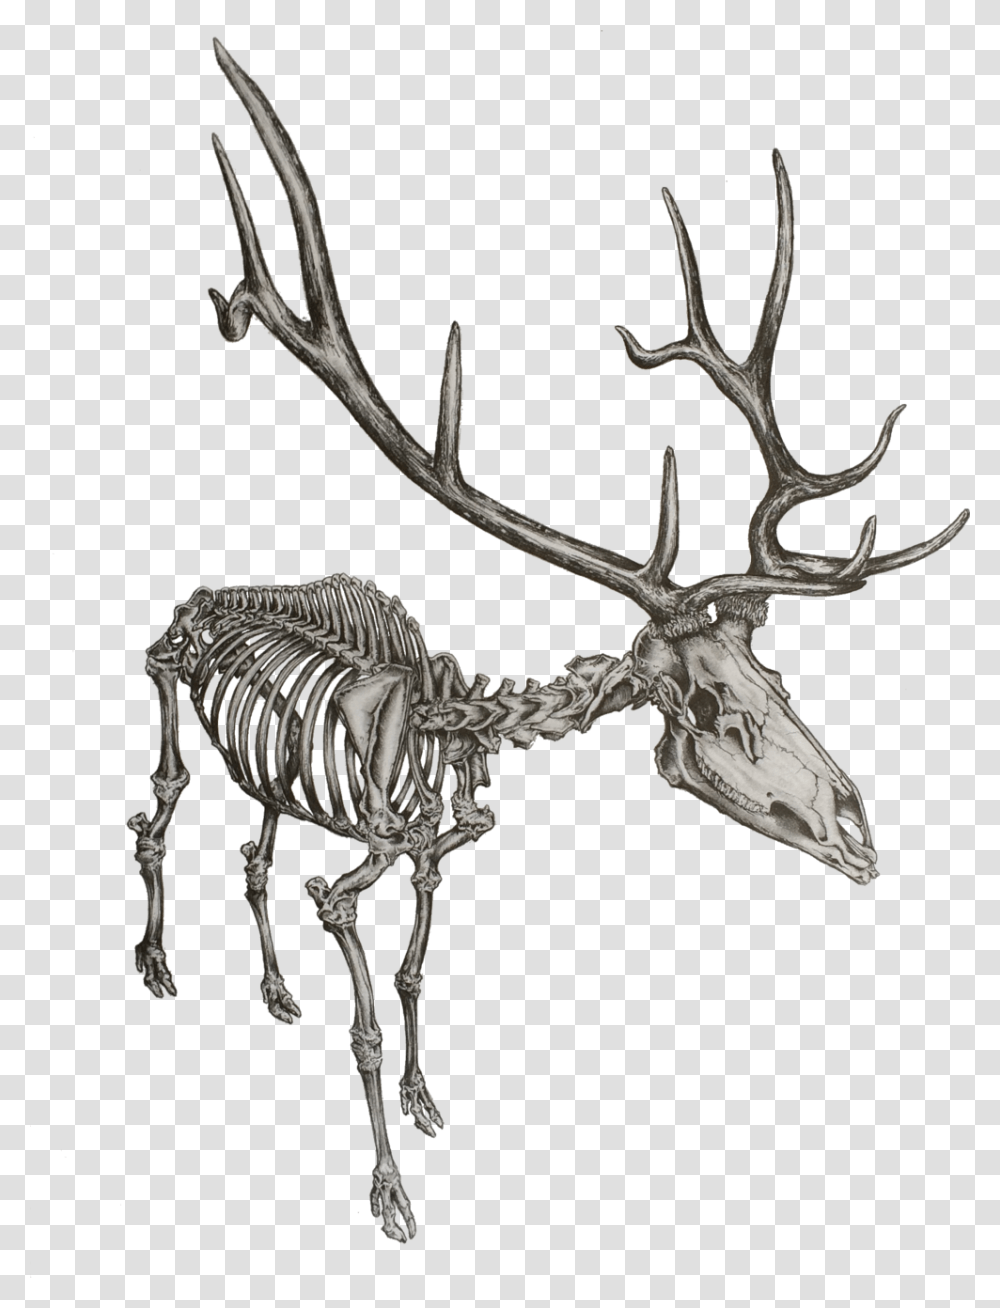 Elk Drawing Skeleton Skeleton Of An Elk, Antelope, Wildlife, Mammal, Animal Transparent Png